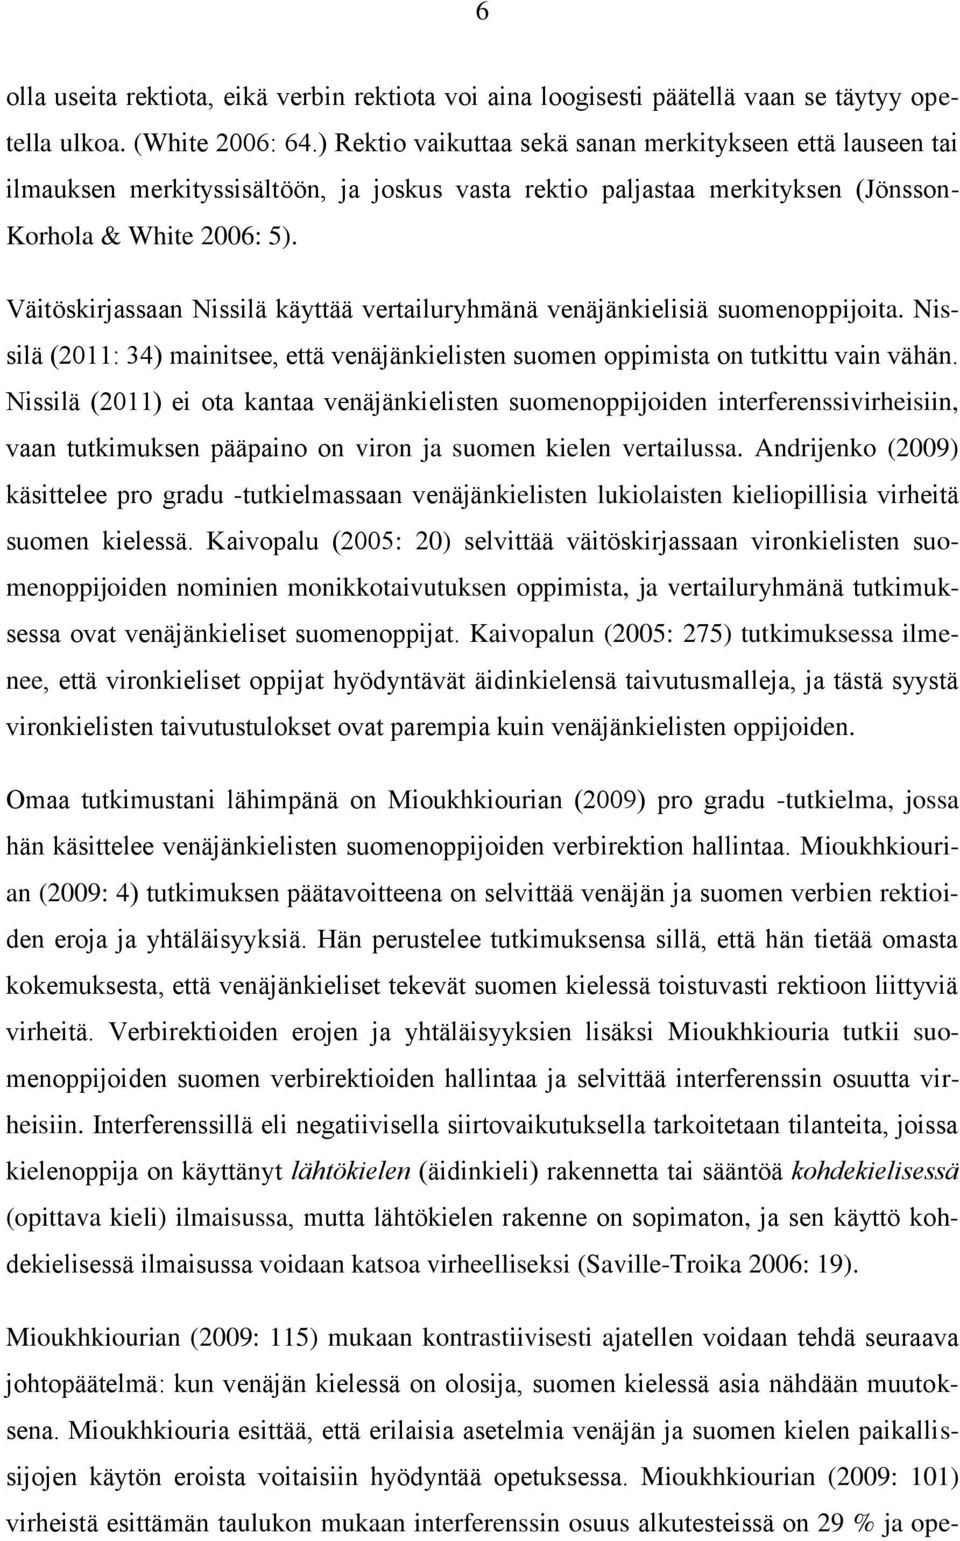 Väitöskirjassaan Nissilä käyttää vertailuryhmänä venäjänkielisiä suomenoppijoita. Nissilä (2011: 34) mainitsee, että venäjänkielisten suomen oppimista on tutkittu vain vähän.